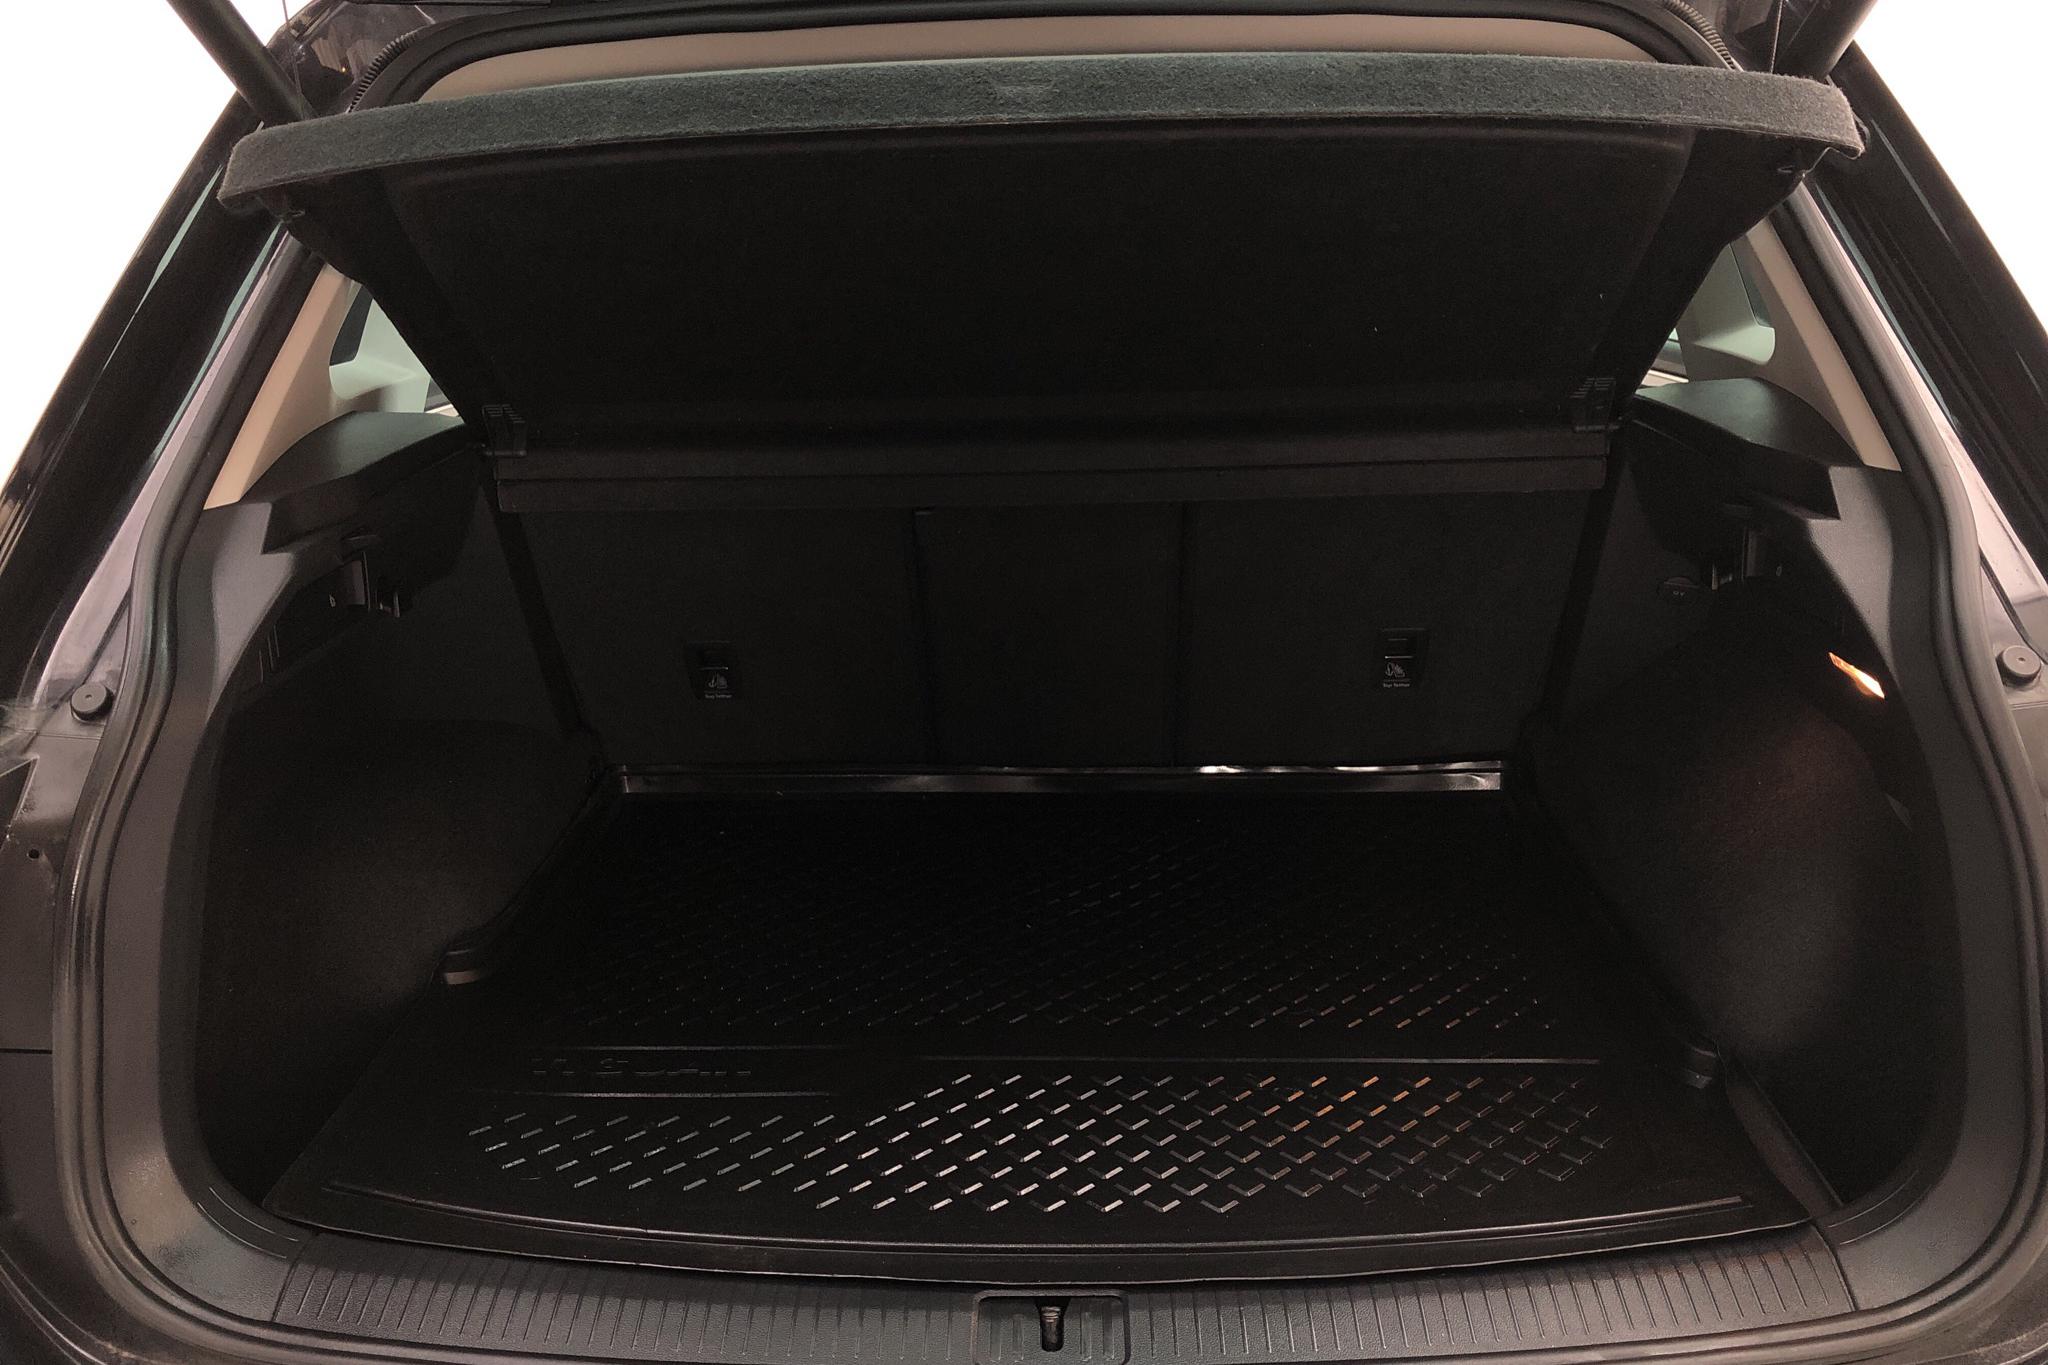 VW Tiguan 2.0 TDI 4MOTION (190hk) - 99 260 km - Automatic - black - 2017